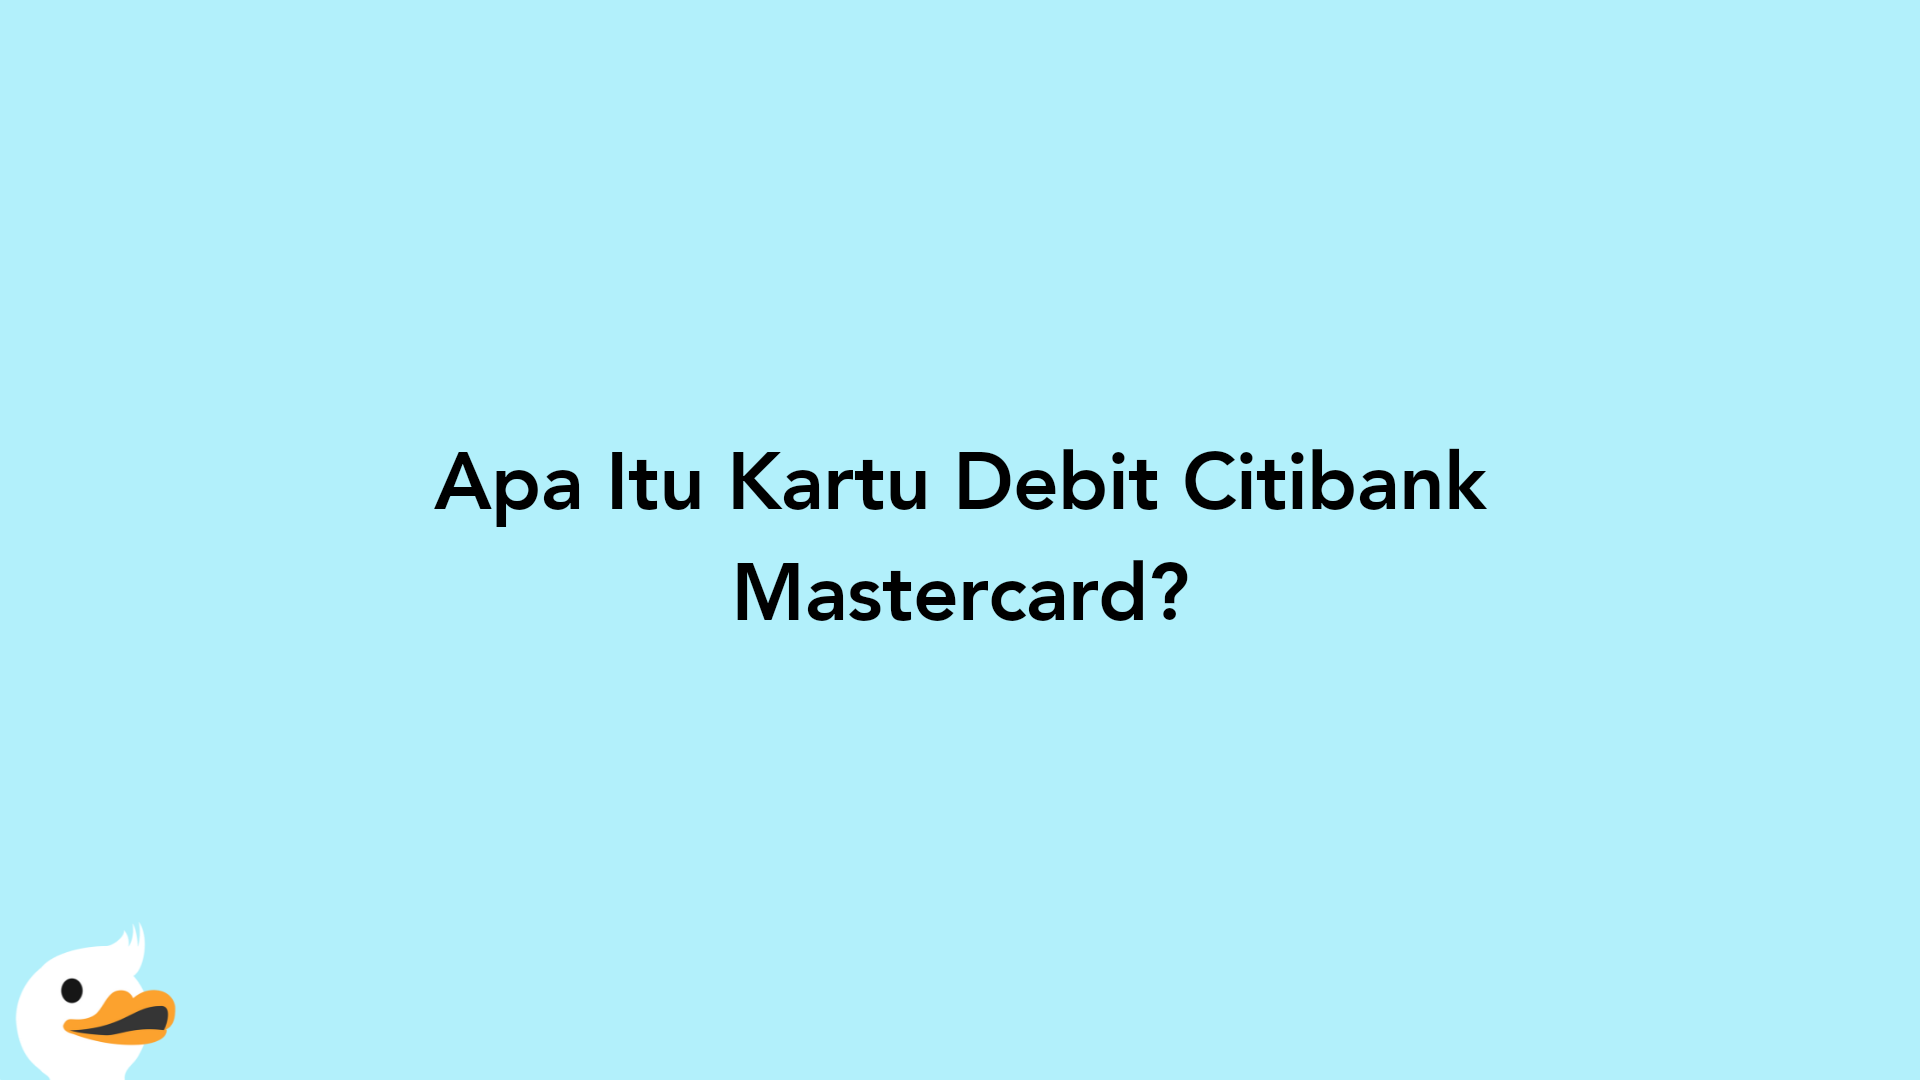 Apa Itu Kartu Debit Citibank Mastercard?